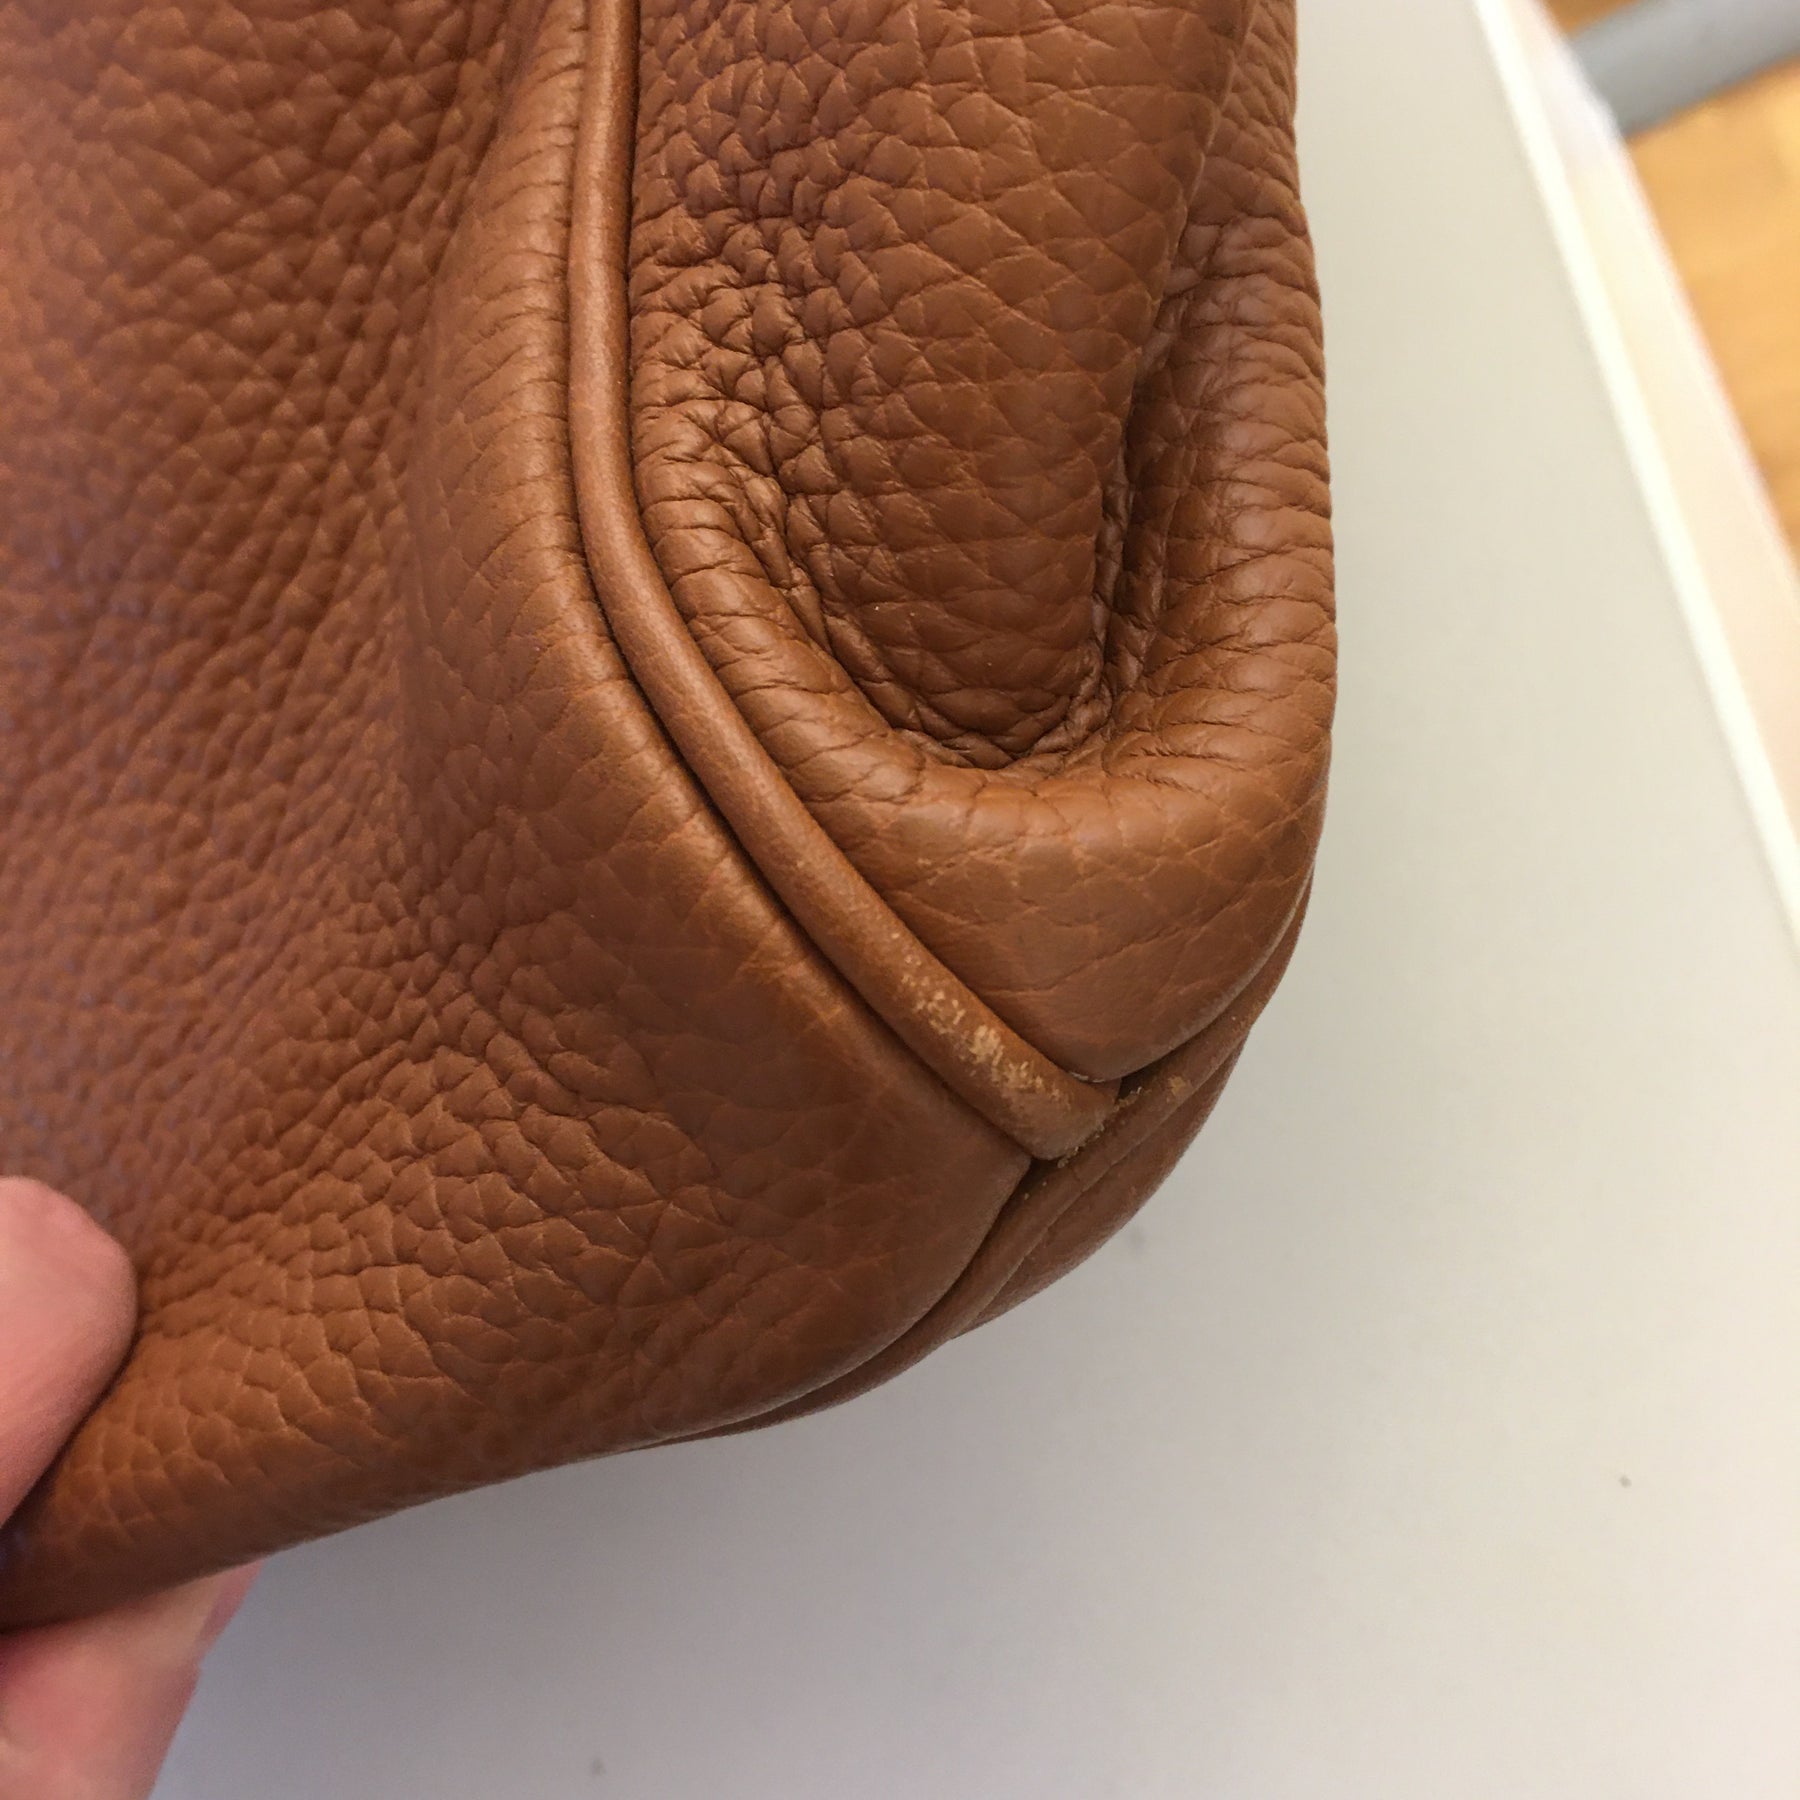 Authentic Hermès HAC Birkin Clemence leather 50 Men's Travel Bag